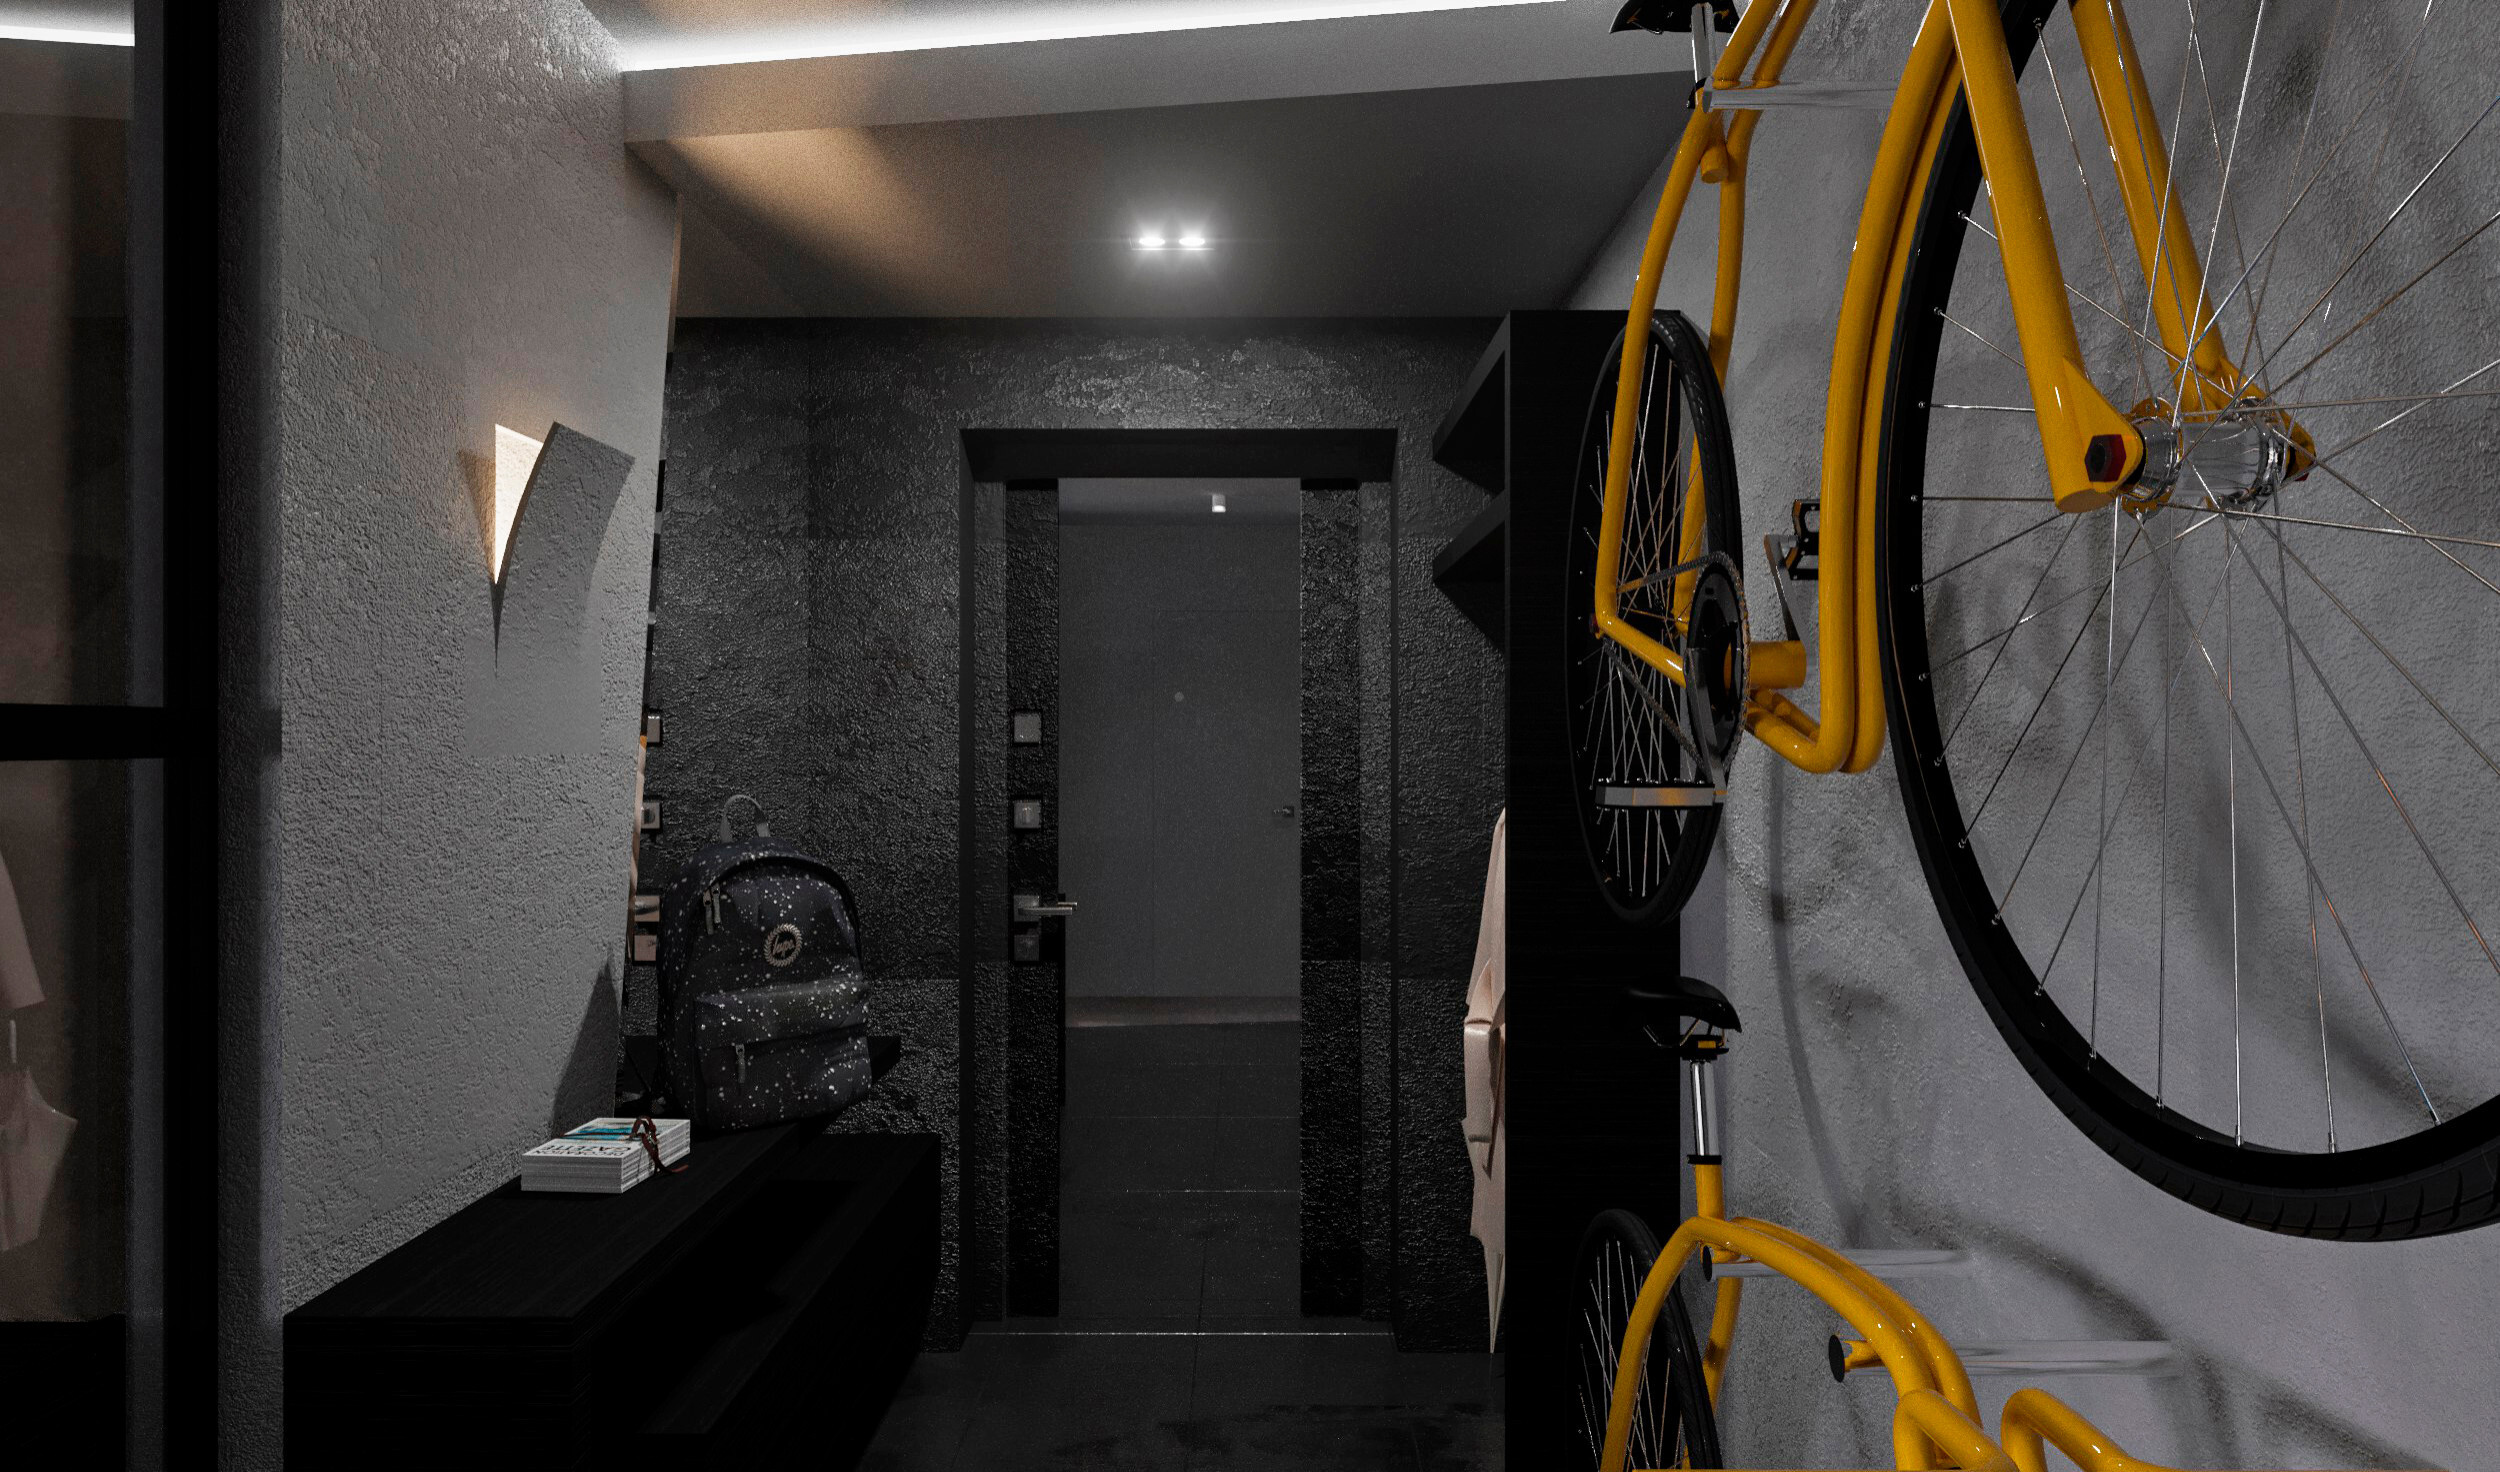 Интерьер коридора с проходной, световыми линиями, подсветкой настенной, подсветкой светодиодной, подсветкой рабочей зоны и с подсветкой